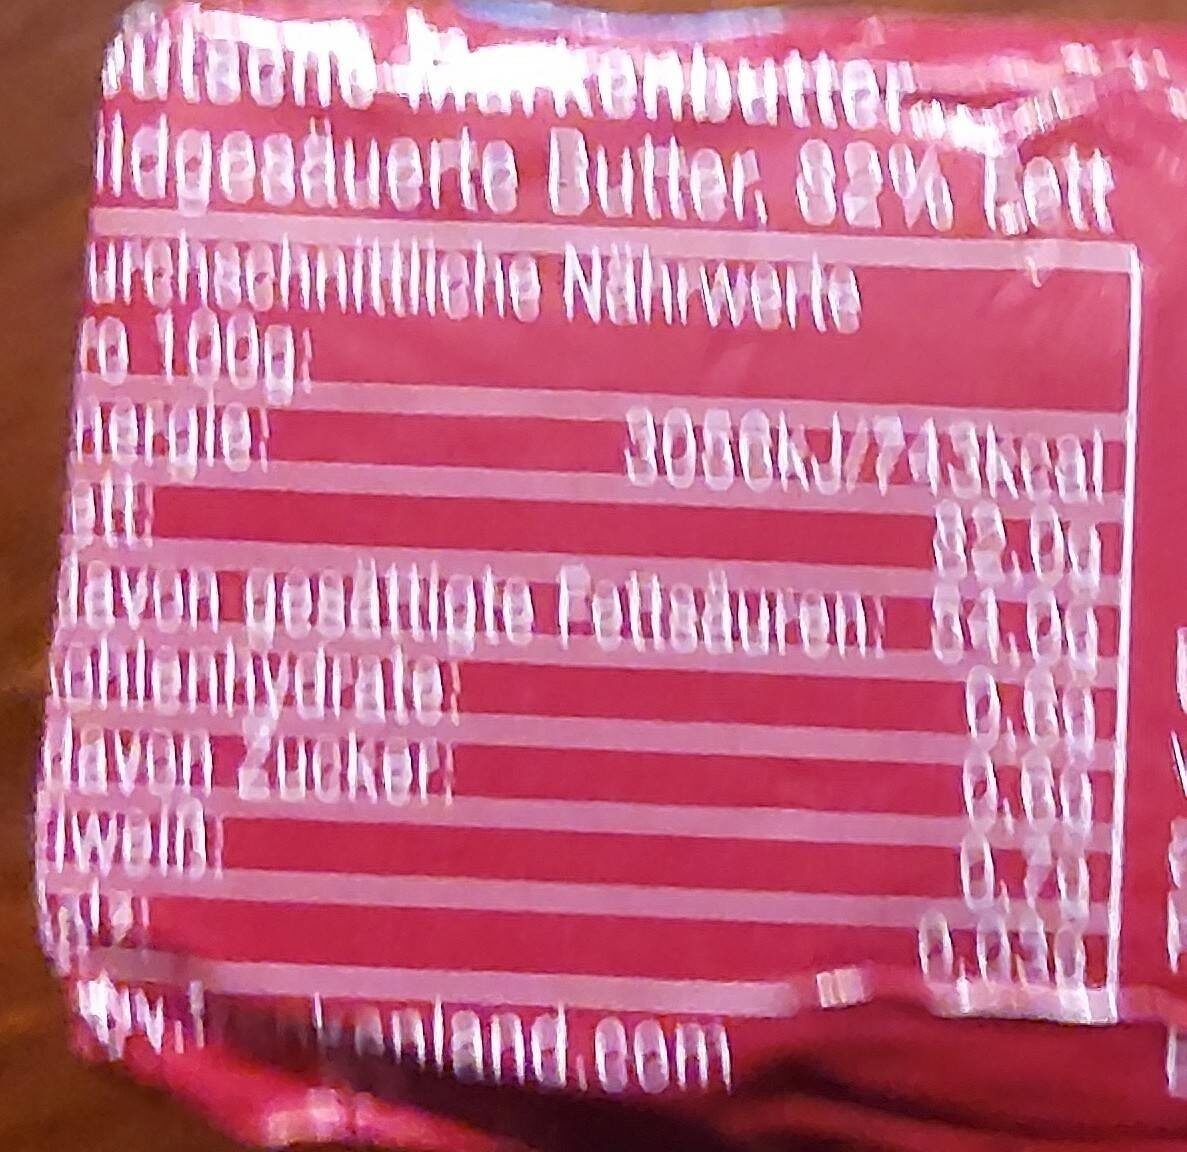 Deutsche Markenbutter - Información nutricional - de